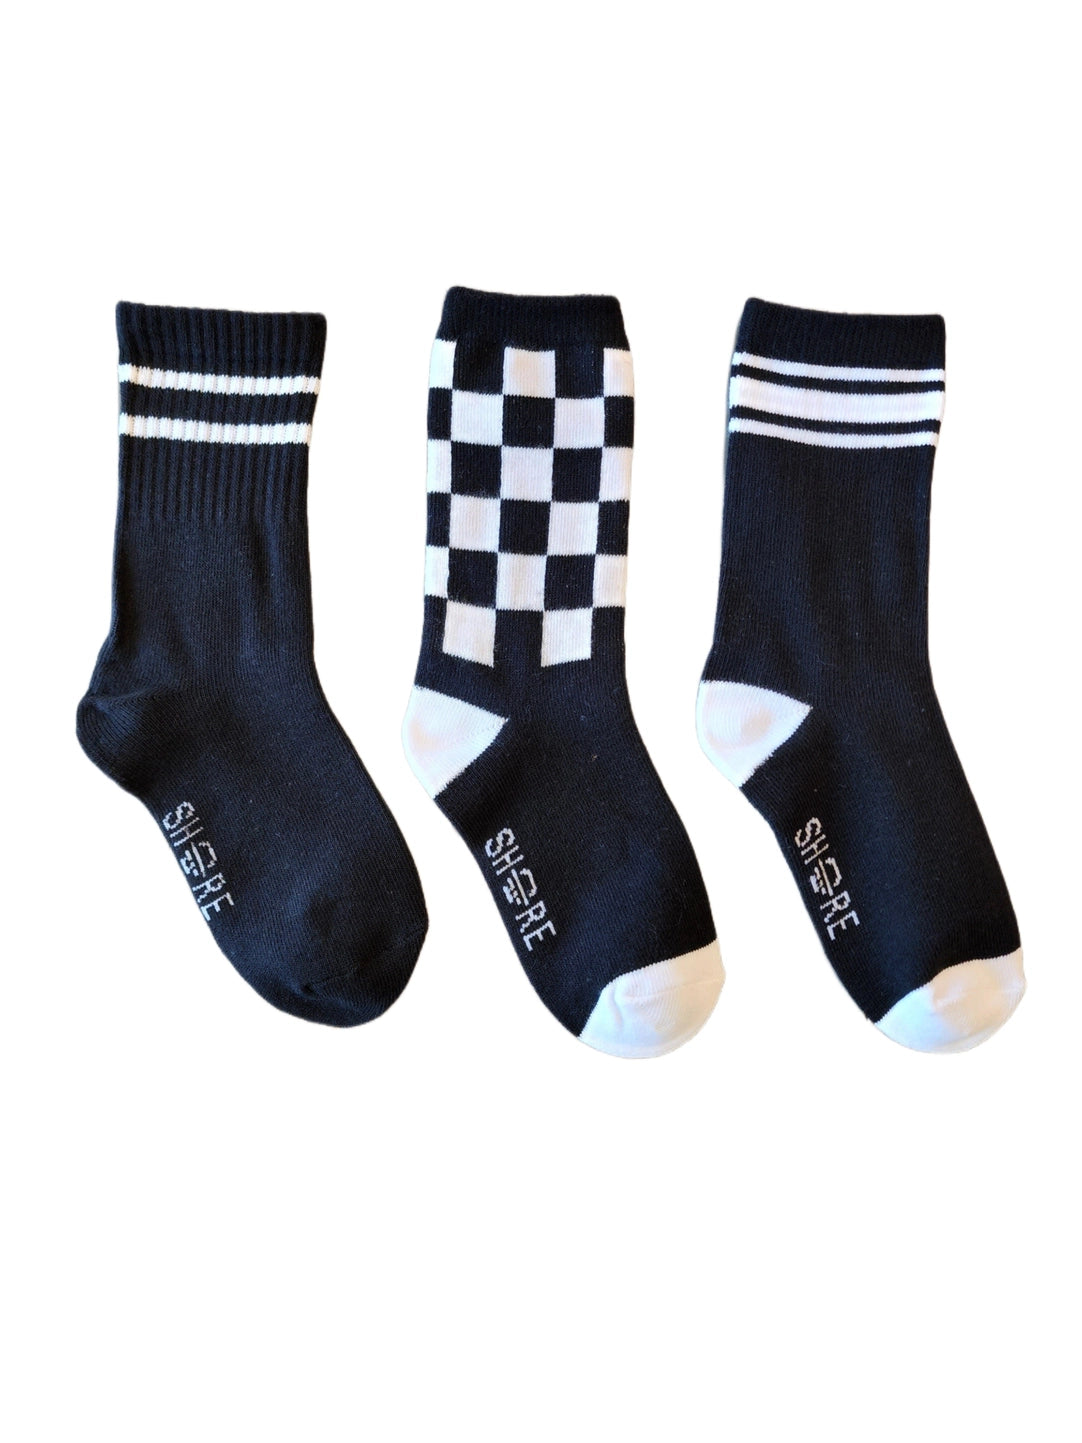 Black/White Socks 3pk